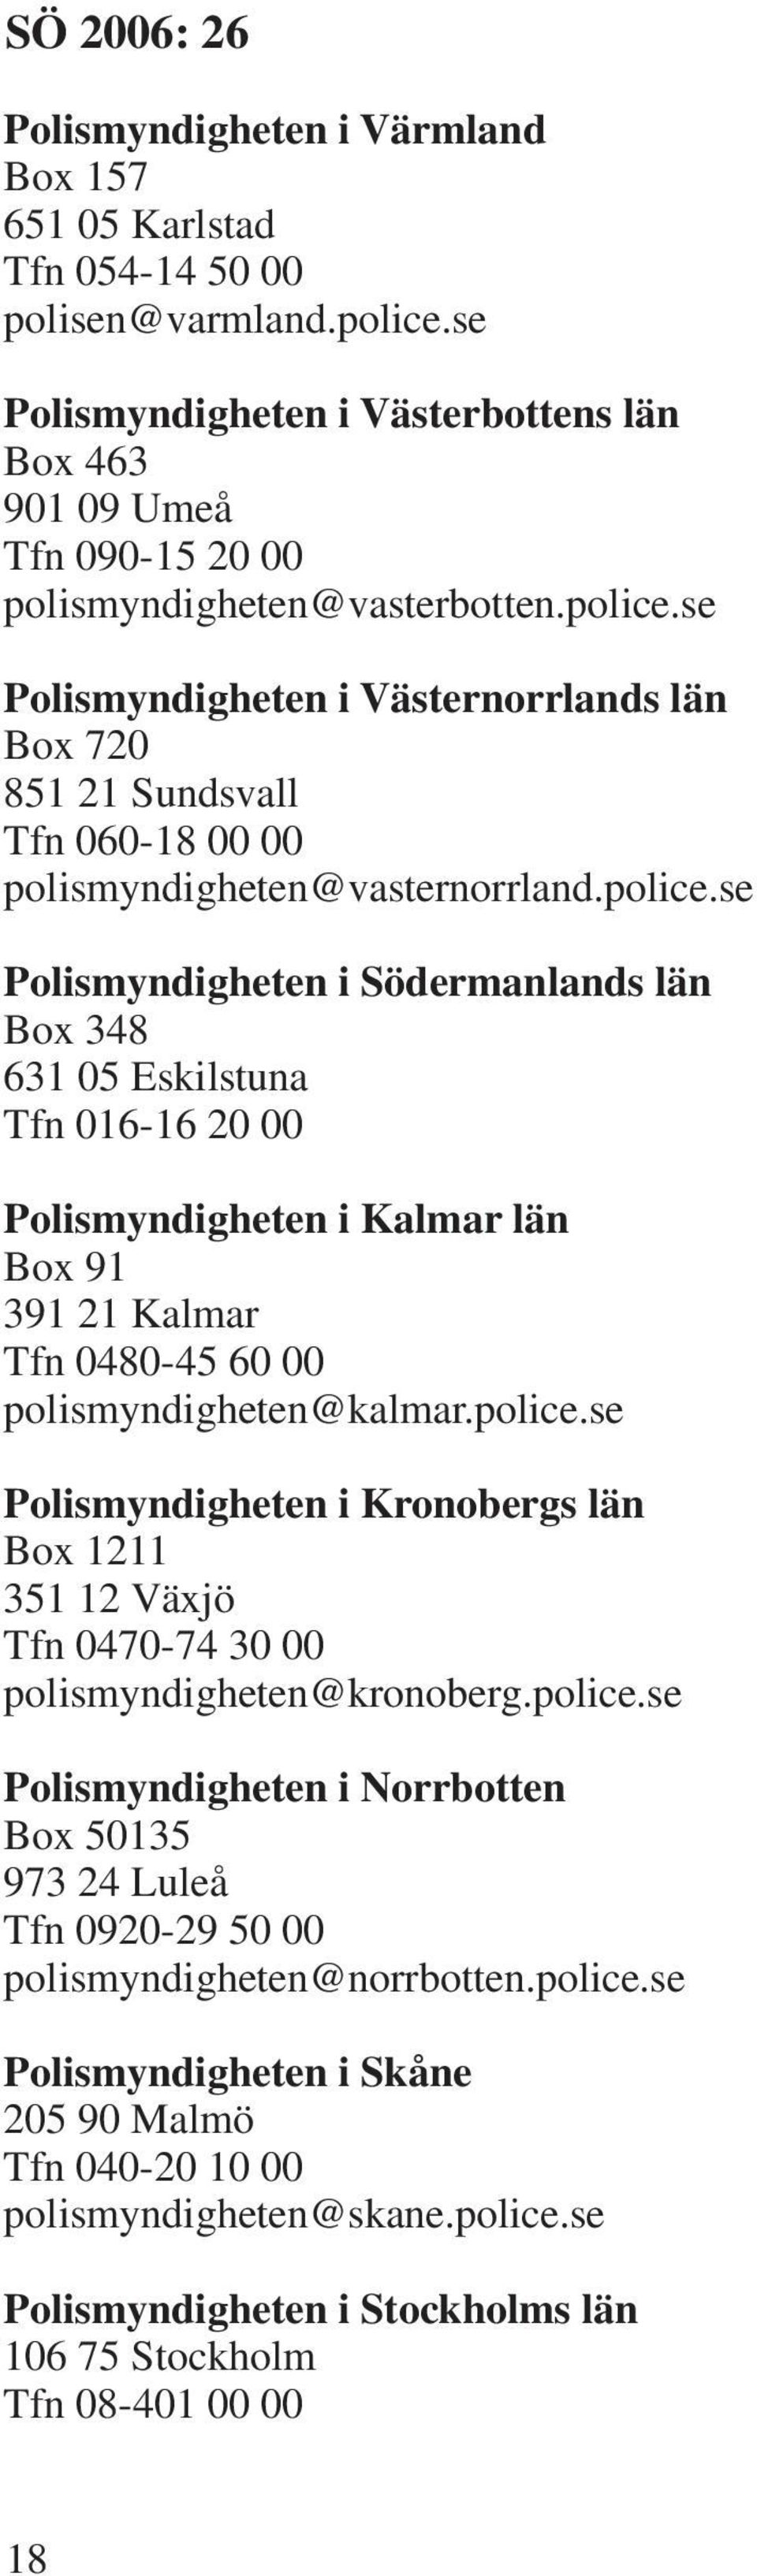 police.se Polismyndigheten i Kronobergs län Box 1211 351 12 Växjö Tfn 0470-74 30 00 polismyndigheten@kronoberg.police.se Polismyndigheten i Norrbotten Box 50135 973 24 Luleå Tfn 0920-29 50 00 polismyndigheten@norrbotten.